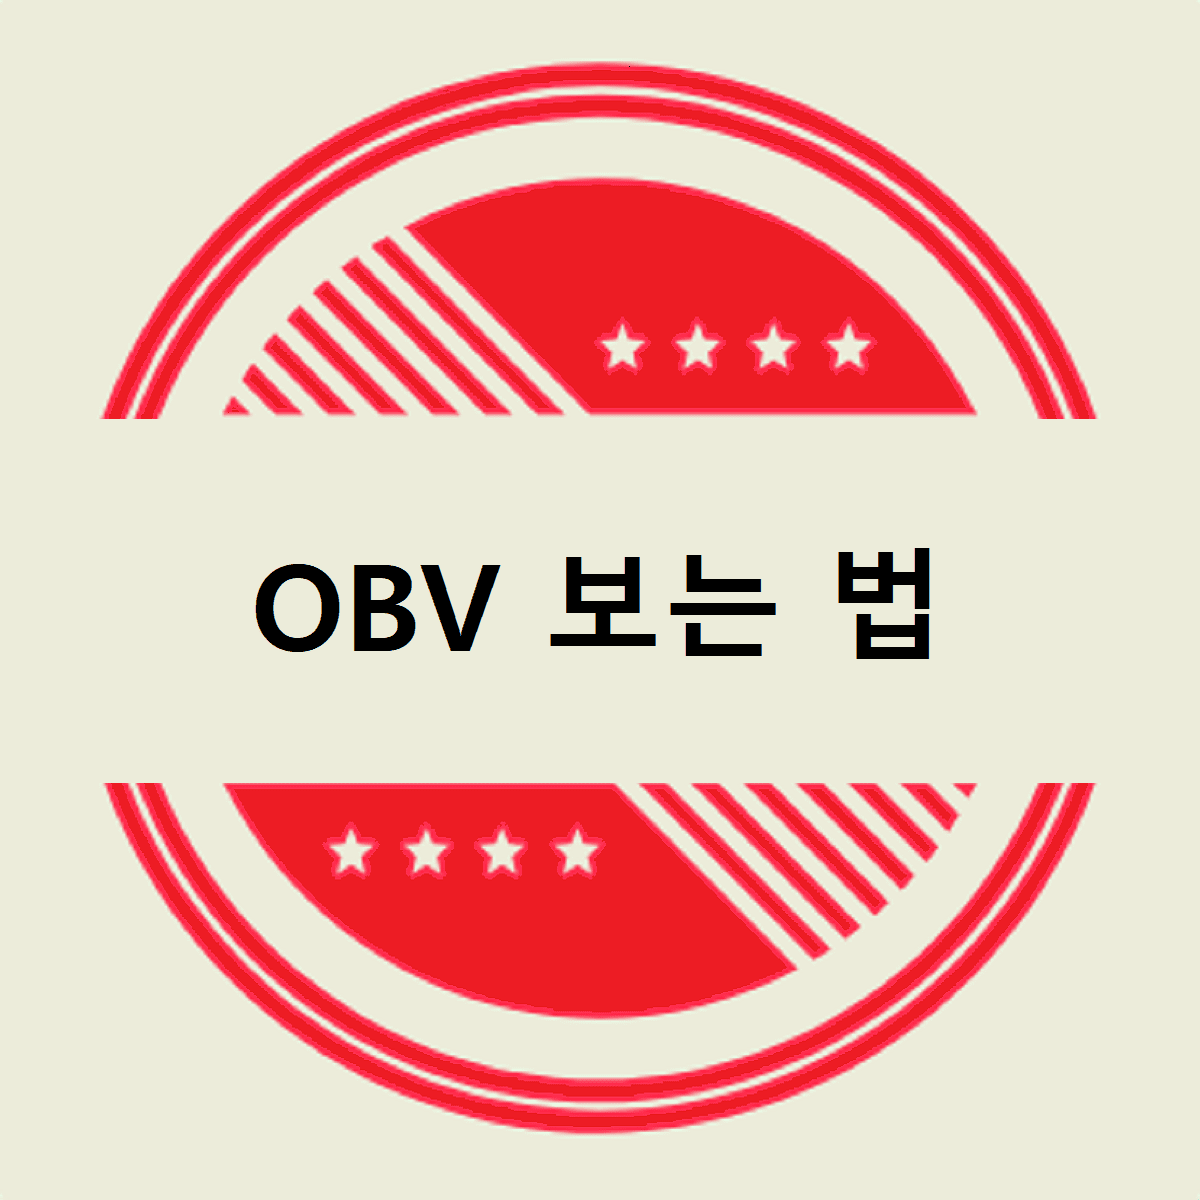 OBV 보는 법